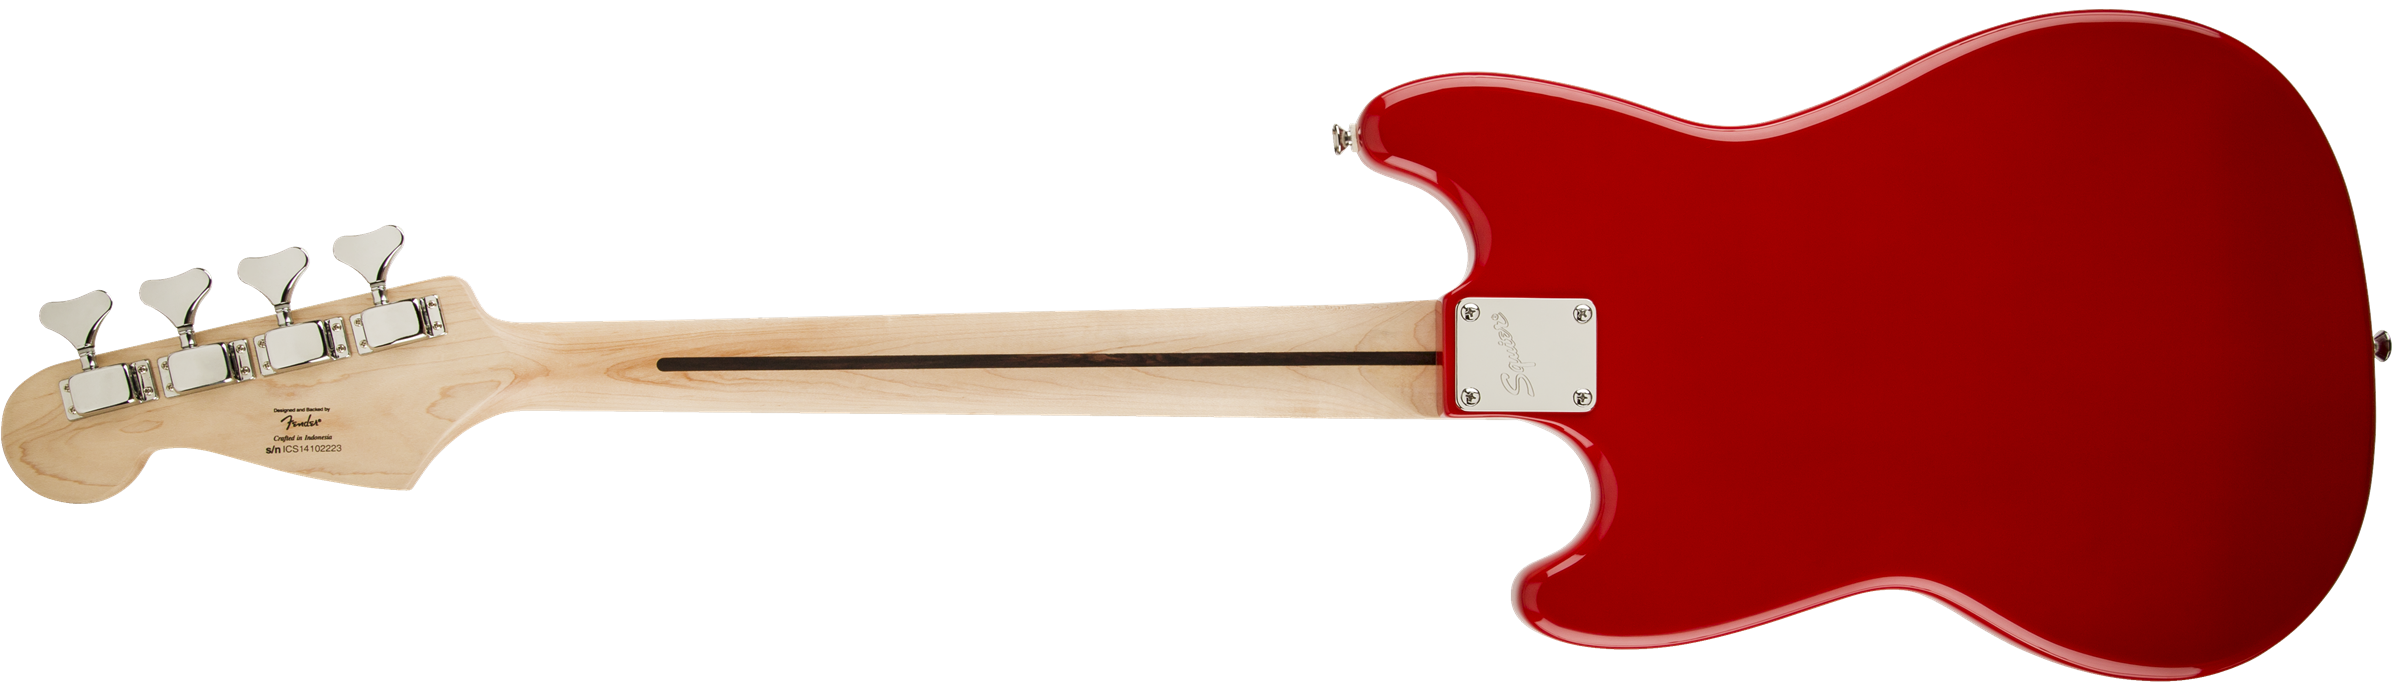 Squier Bronco Bass Mn - Torino Red - Short scale elektrische bas - Variation 1